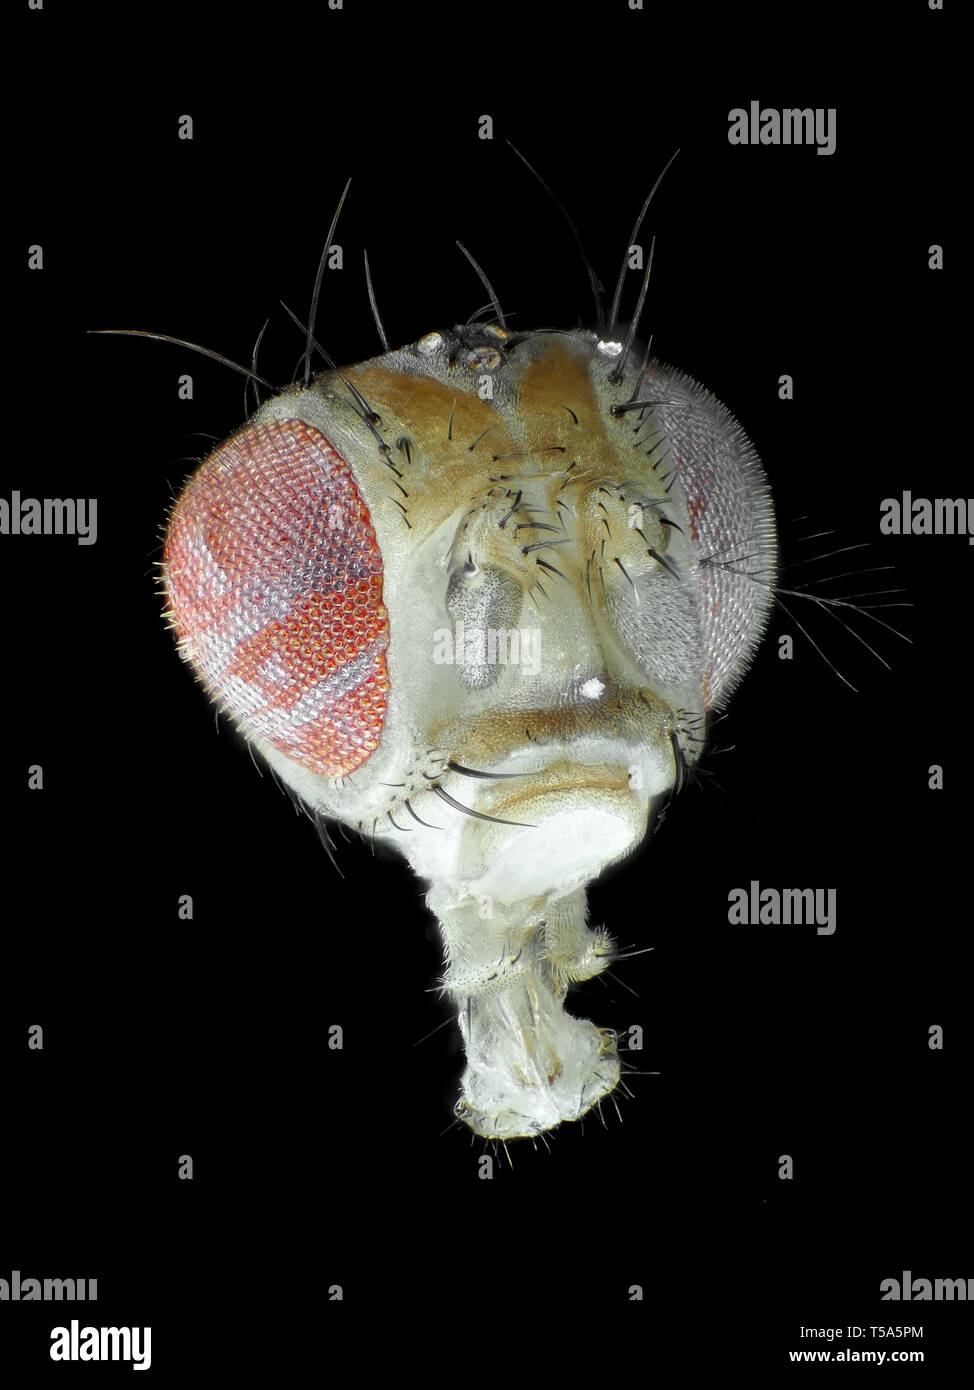 Kopf von Drosophila melanogaster, reflektierte Licht Schliffbild Stockfoto